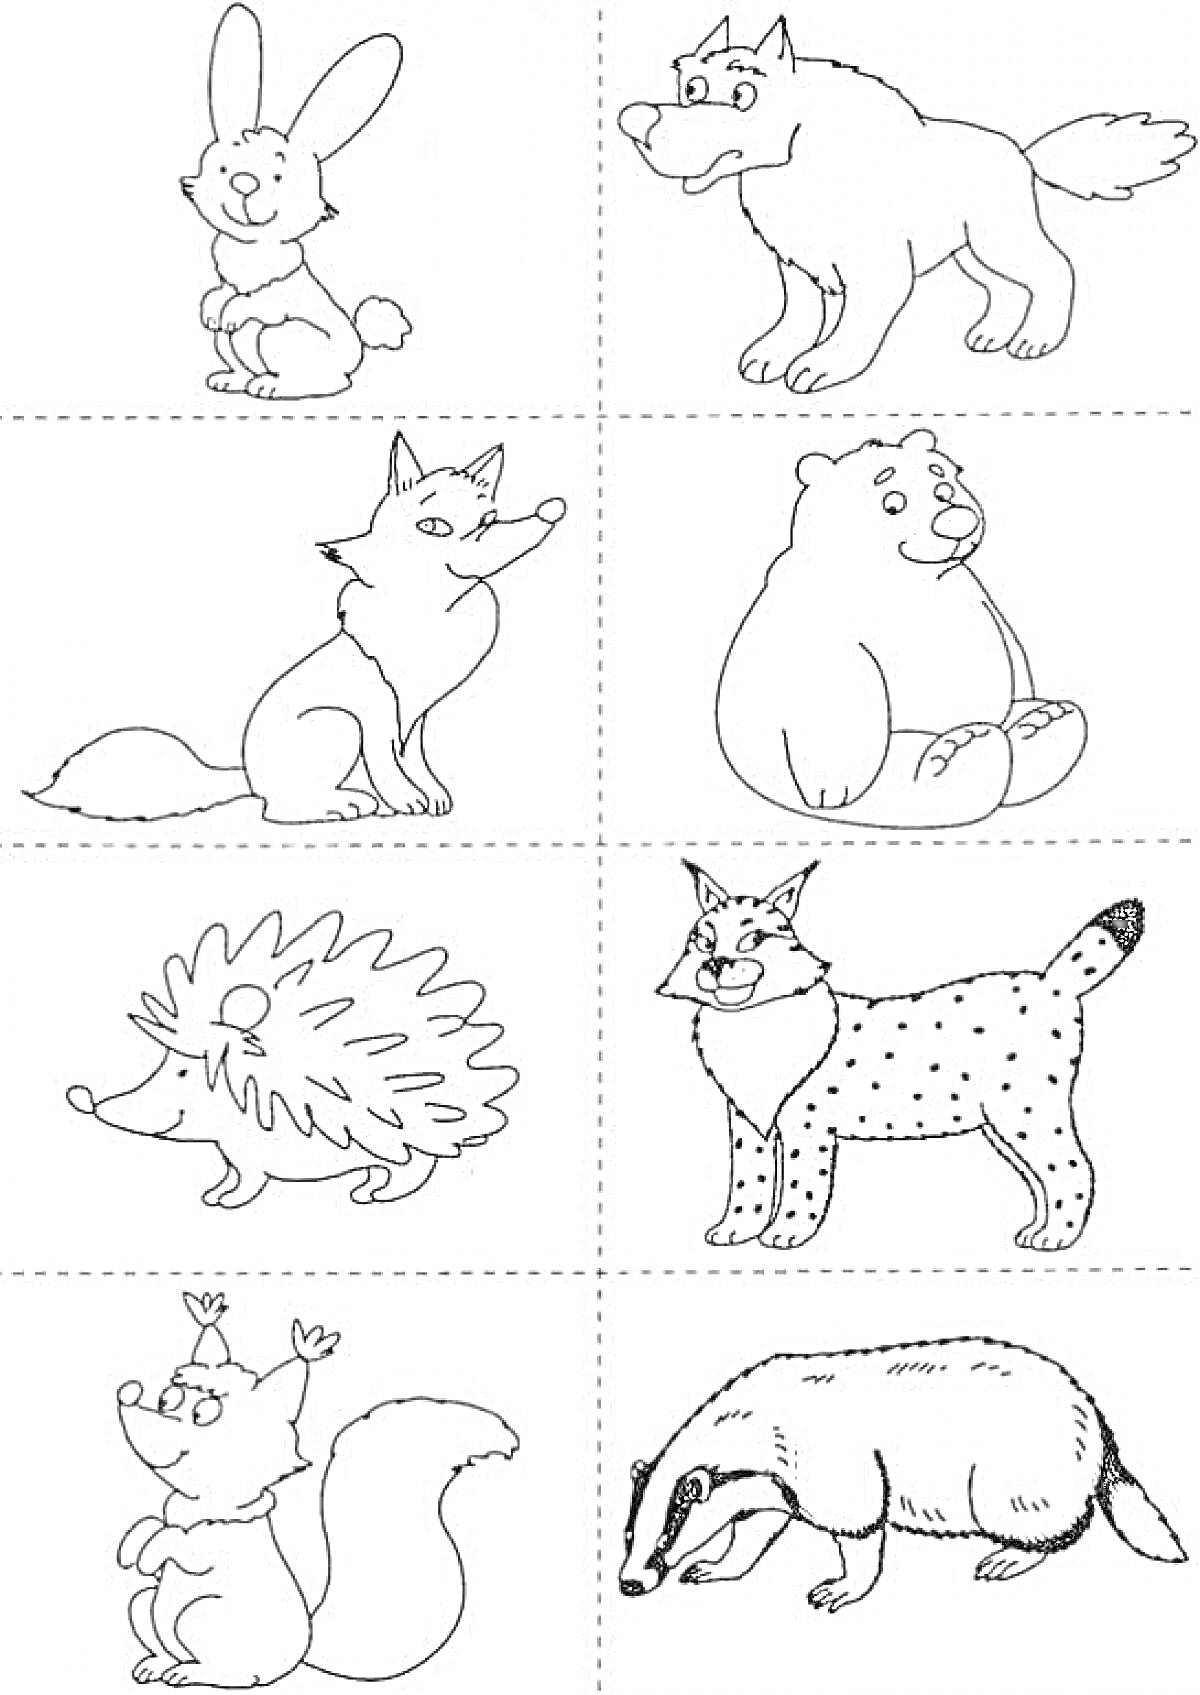 Раскраска с дикими животными для детей 5-7 лет (заяц, волк, лиса, медведь, ёж, рысь, белка, барсук)